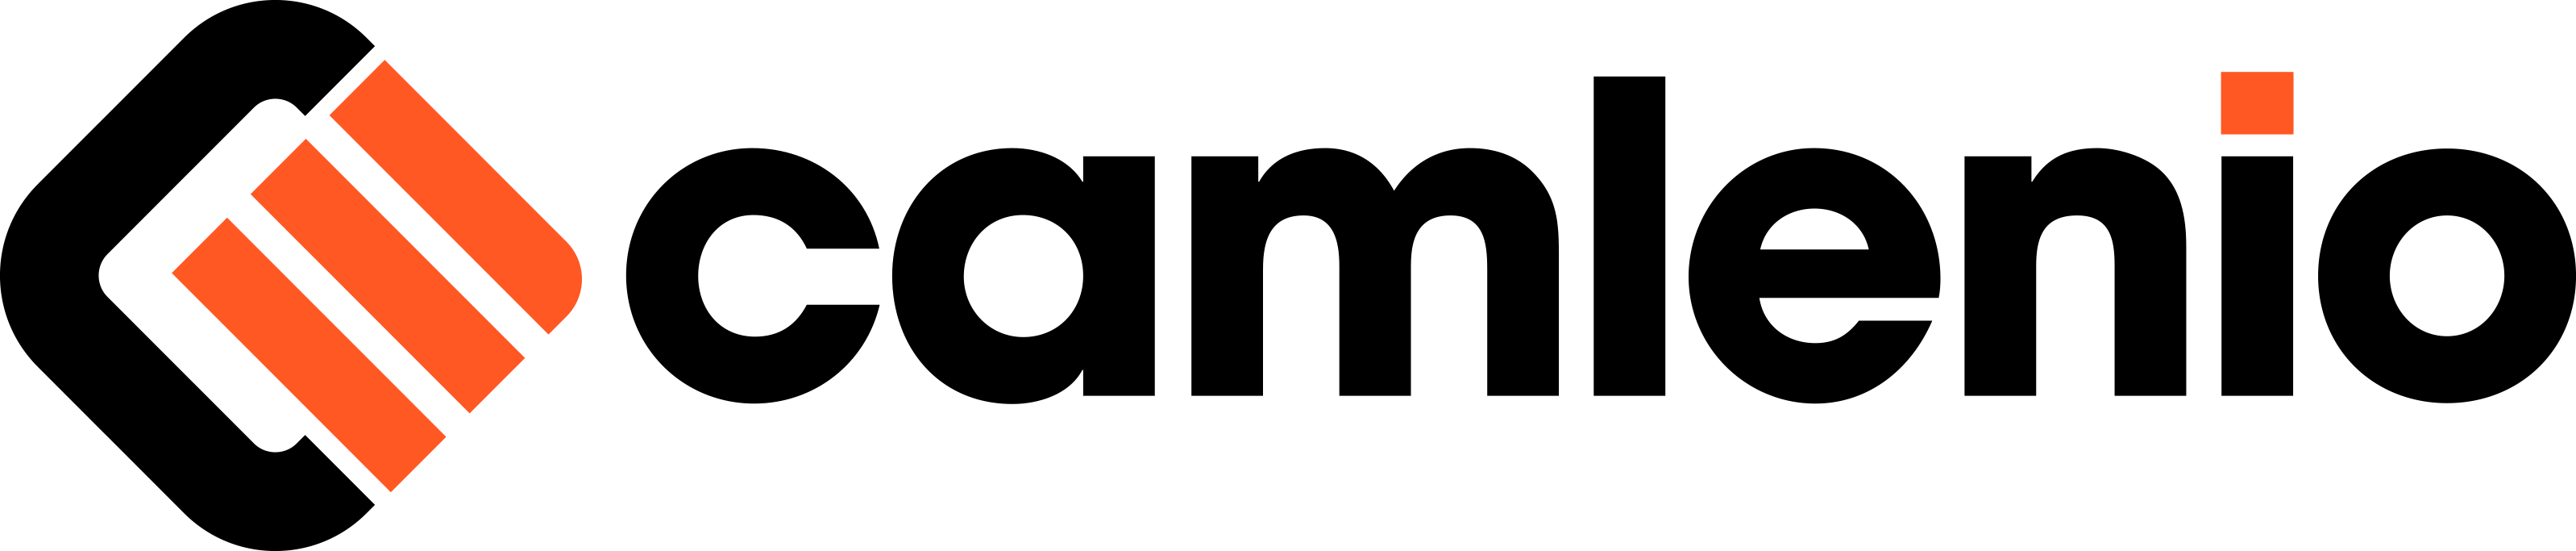 camlenio-logo